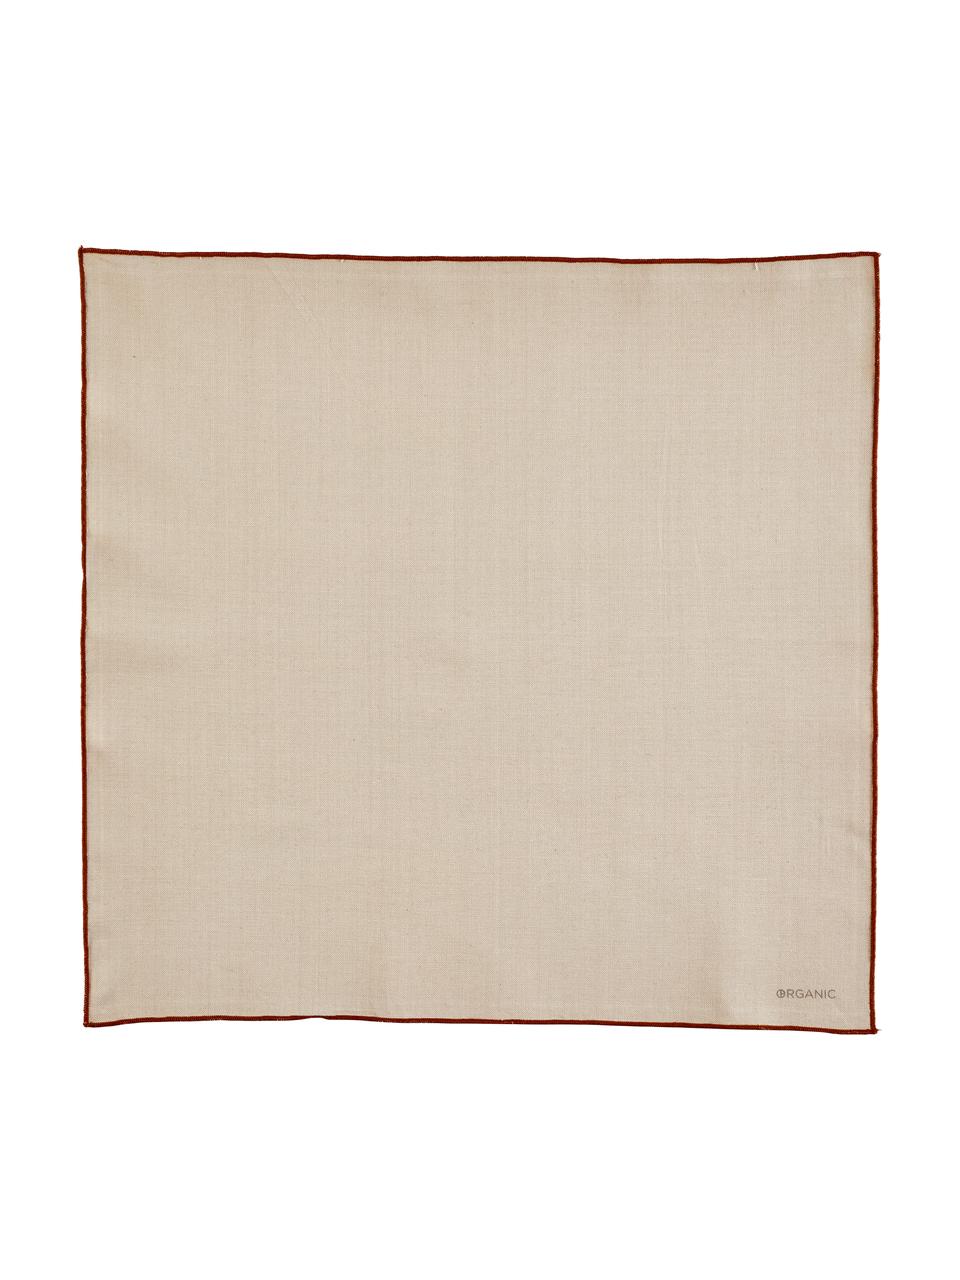 Serwetka z bawełny Organic, 2 szt., 100% bawełna, Kremowobiały, S 8 x D 18 cm